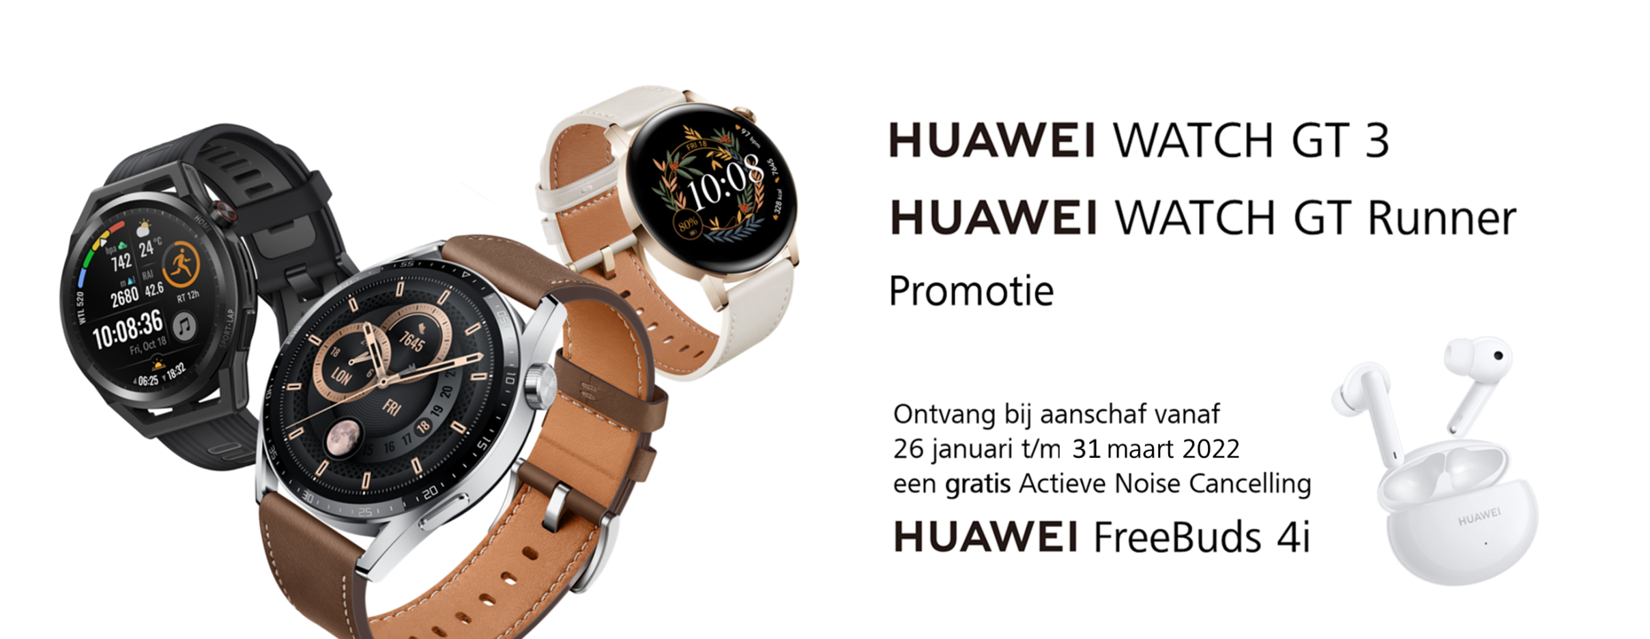 Huawei watch gt3